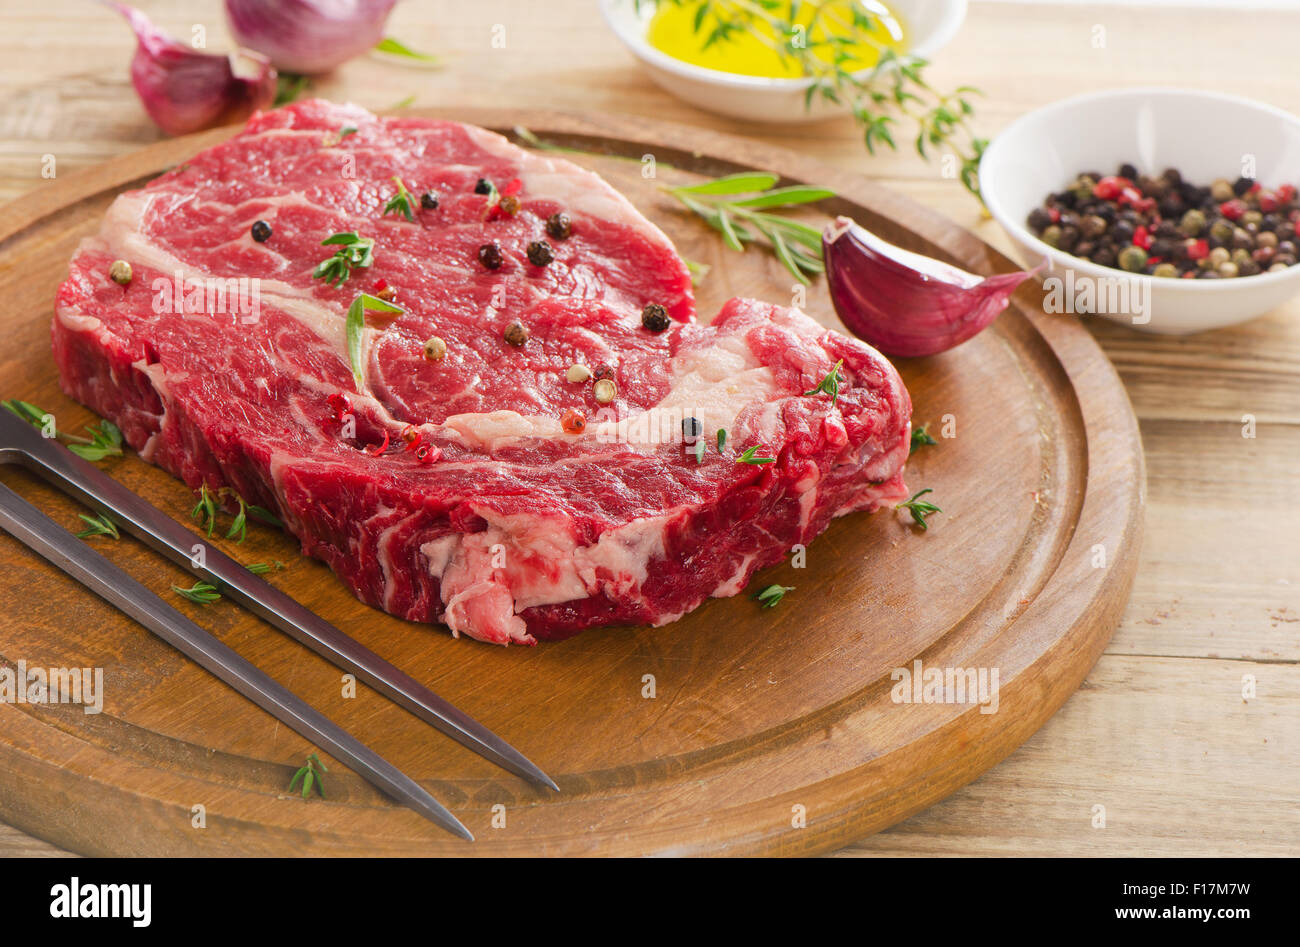 Steak de boeuf cru sur table en bois. Selective focus Banque D'Images